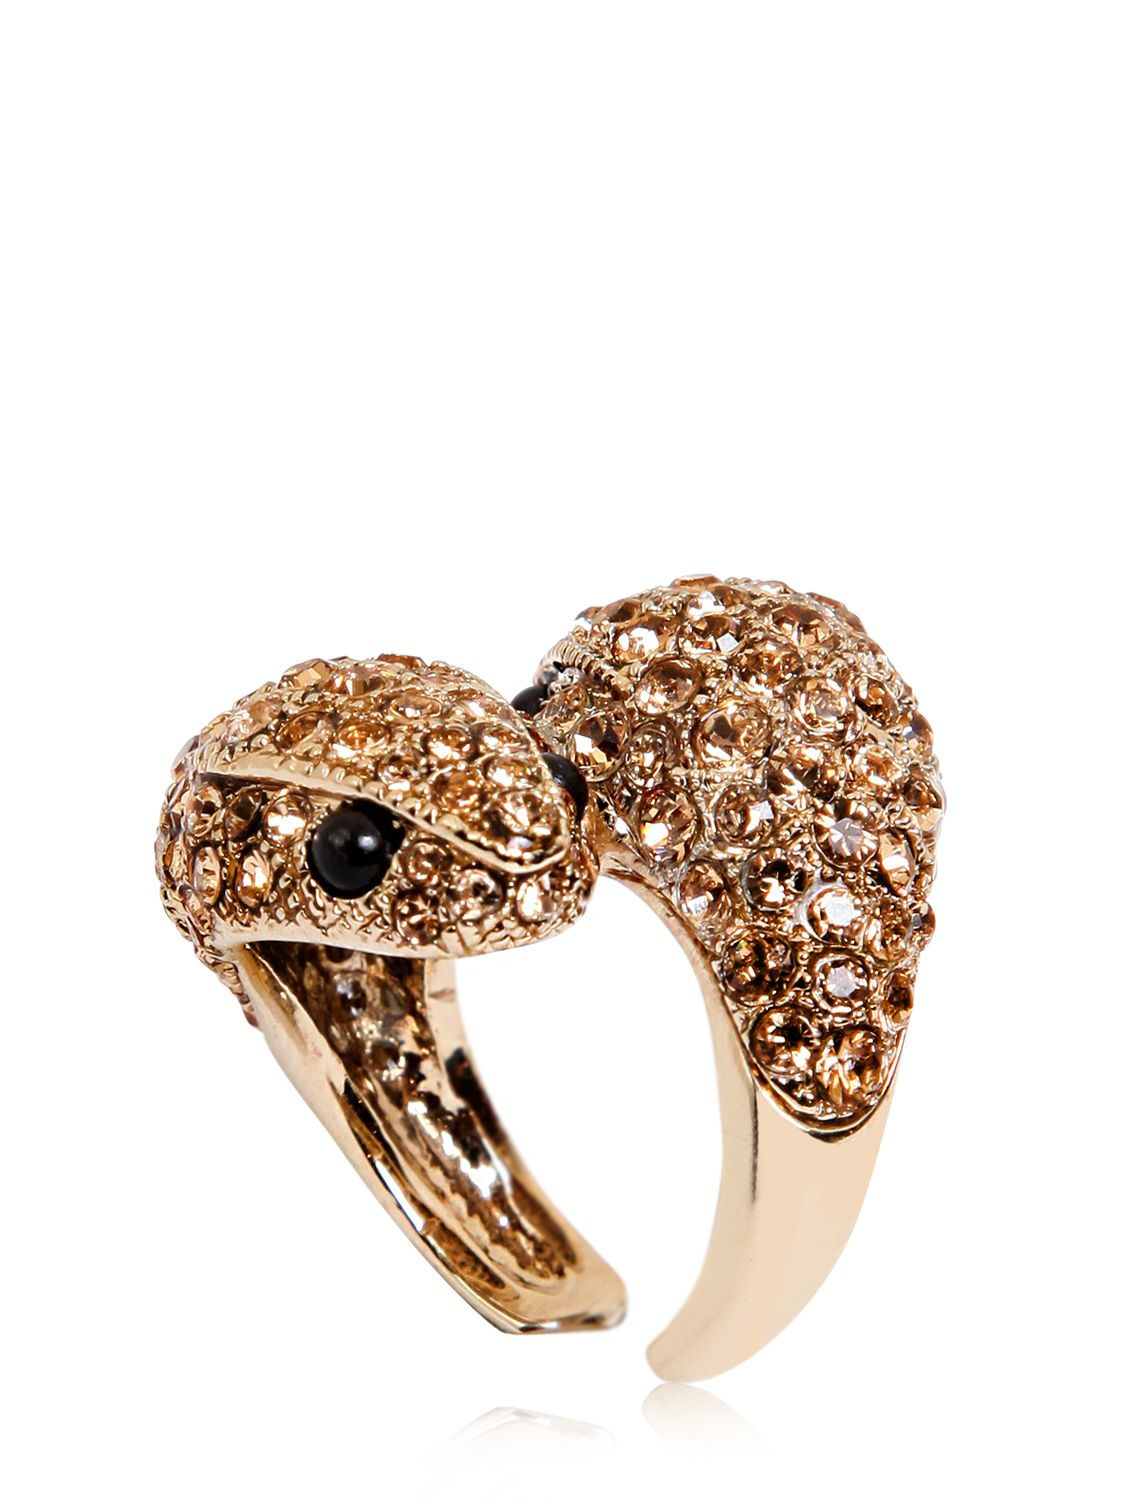 Roberto Cavalli Embellished Snake Ring in Gold (Metallic) | Lyst